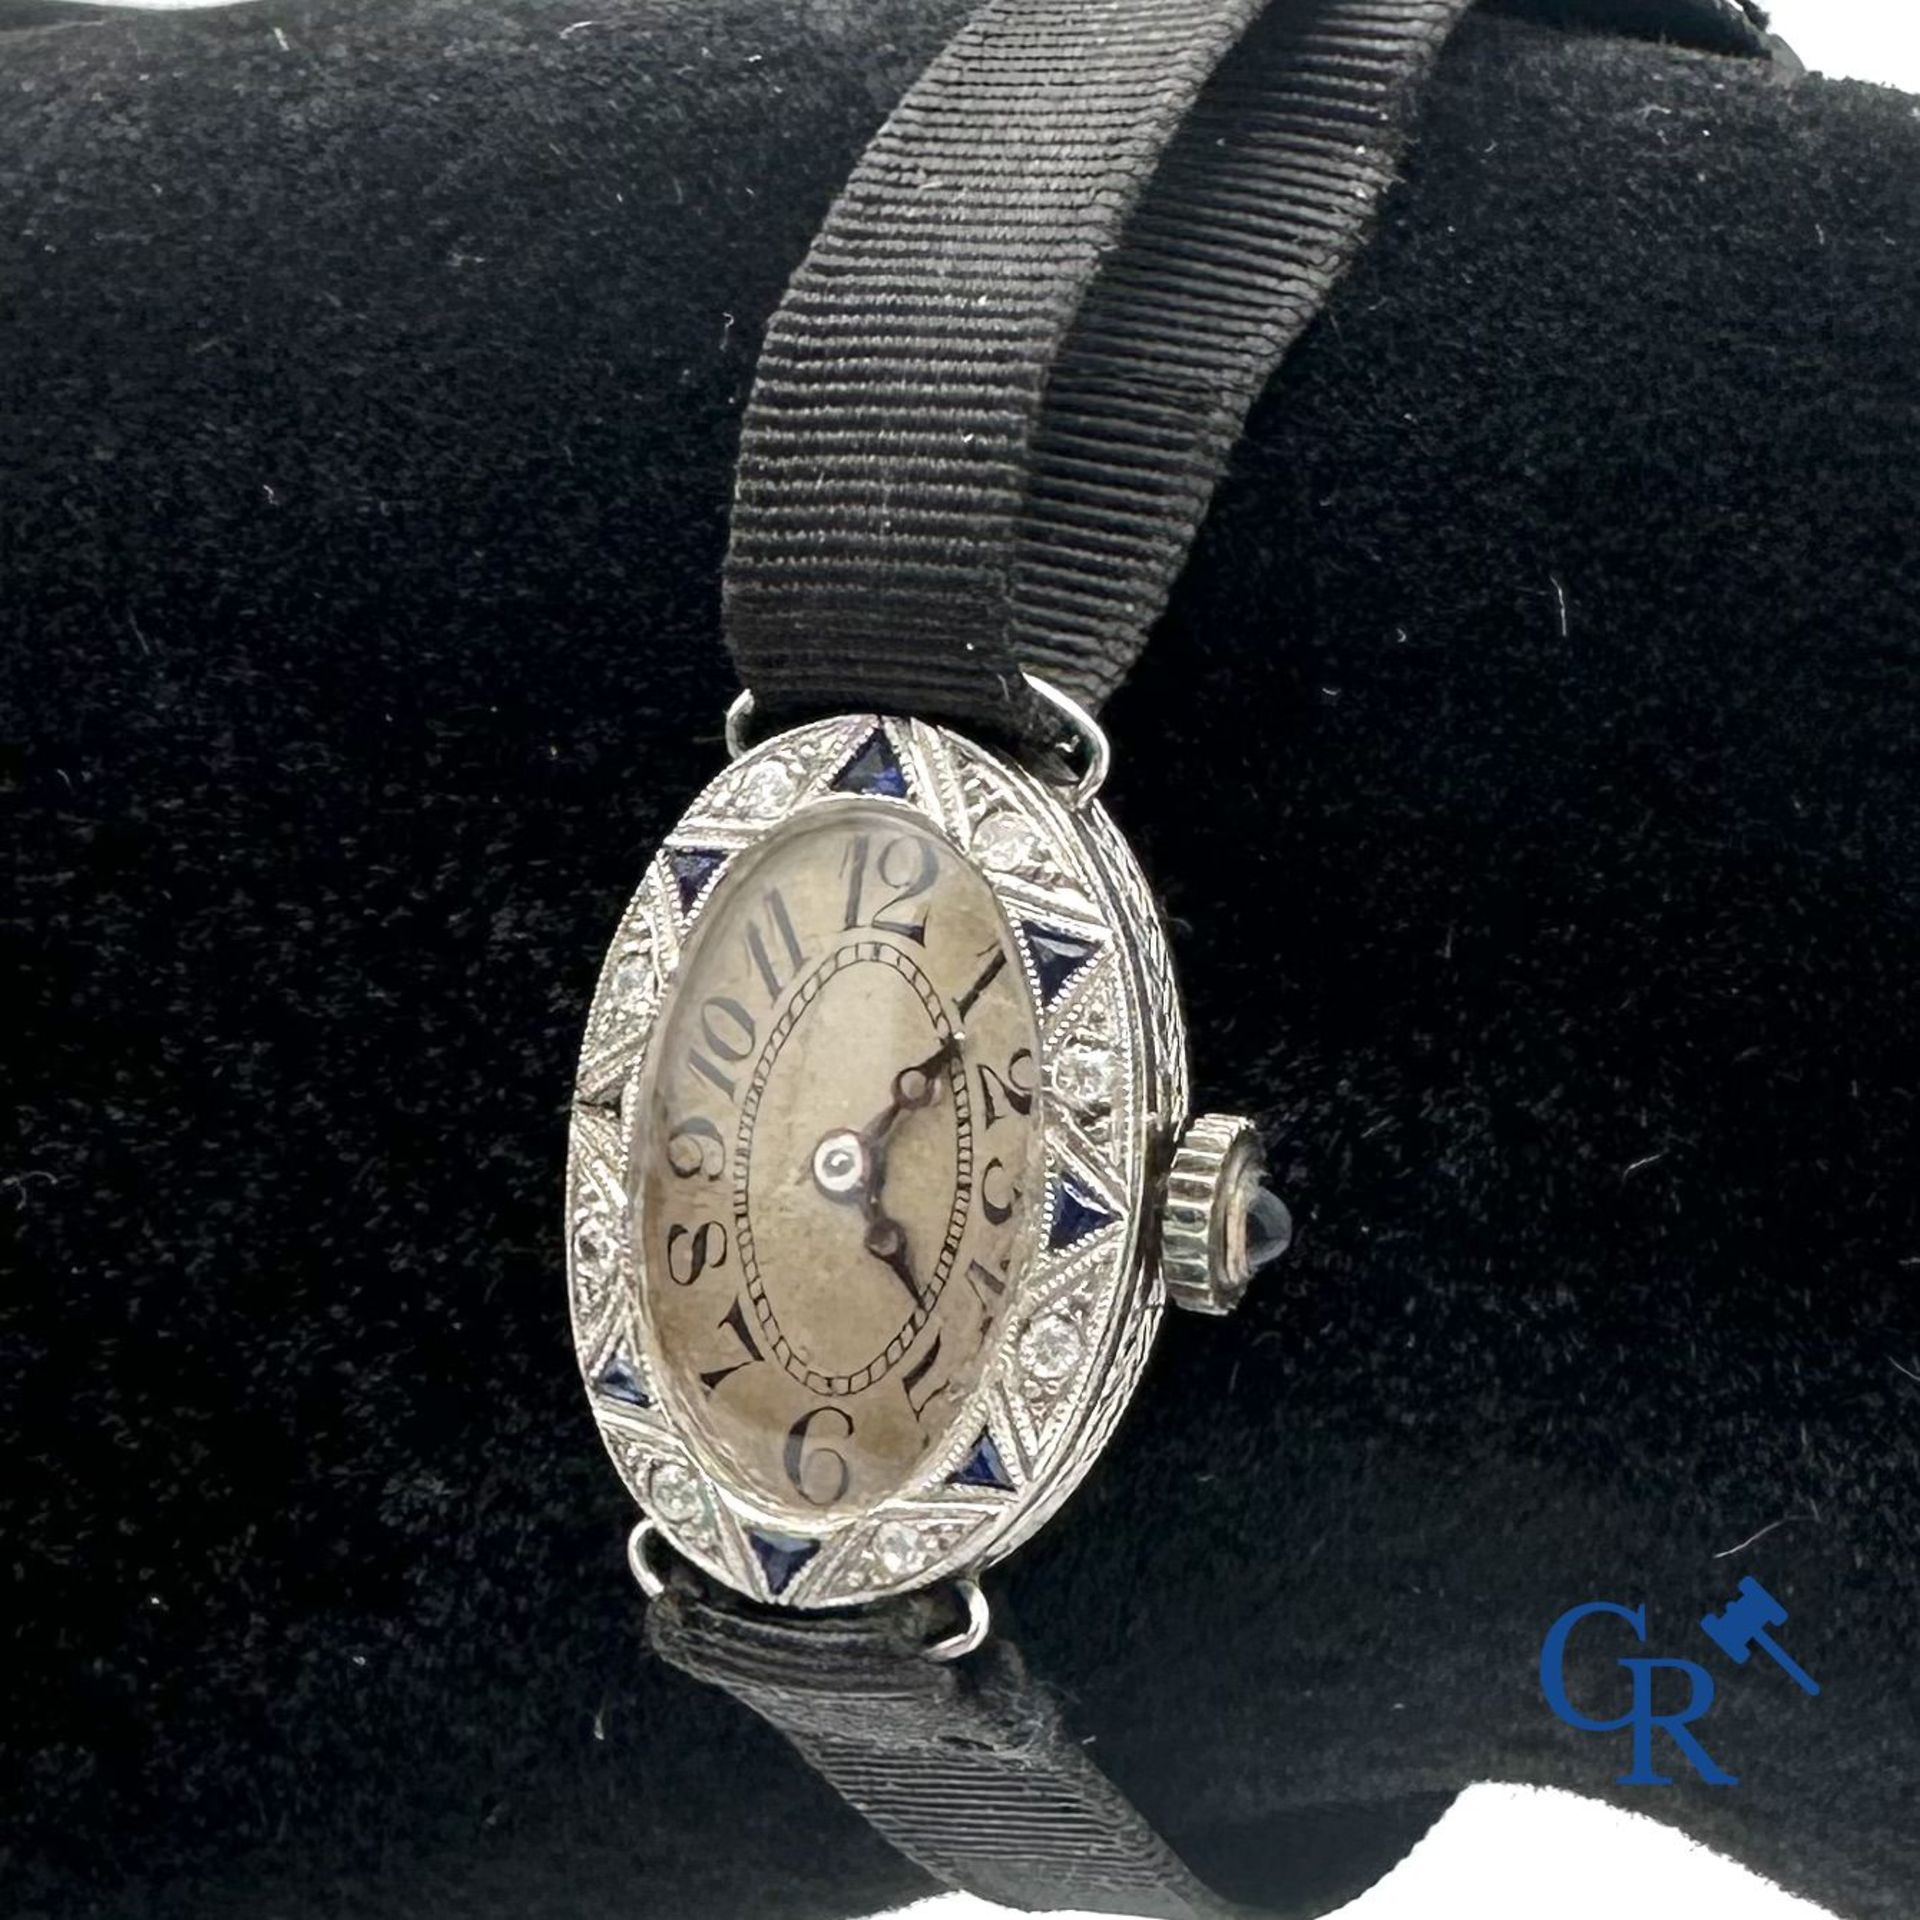 Jewellery - Timepiece: Art Deco ladies watch in Platinum. - Bild 2 aus 4